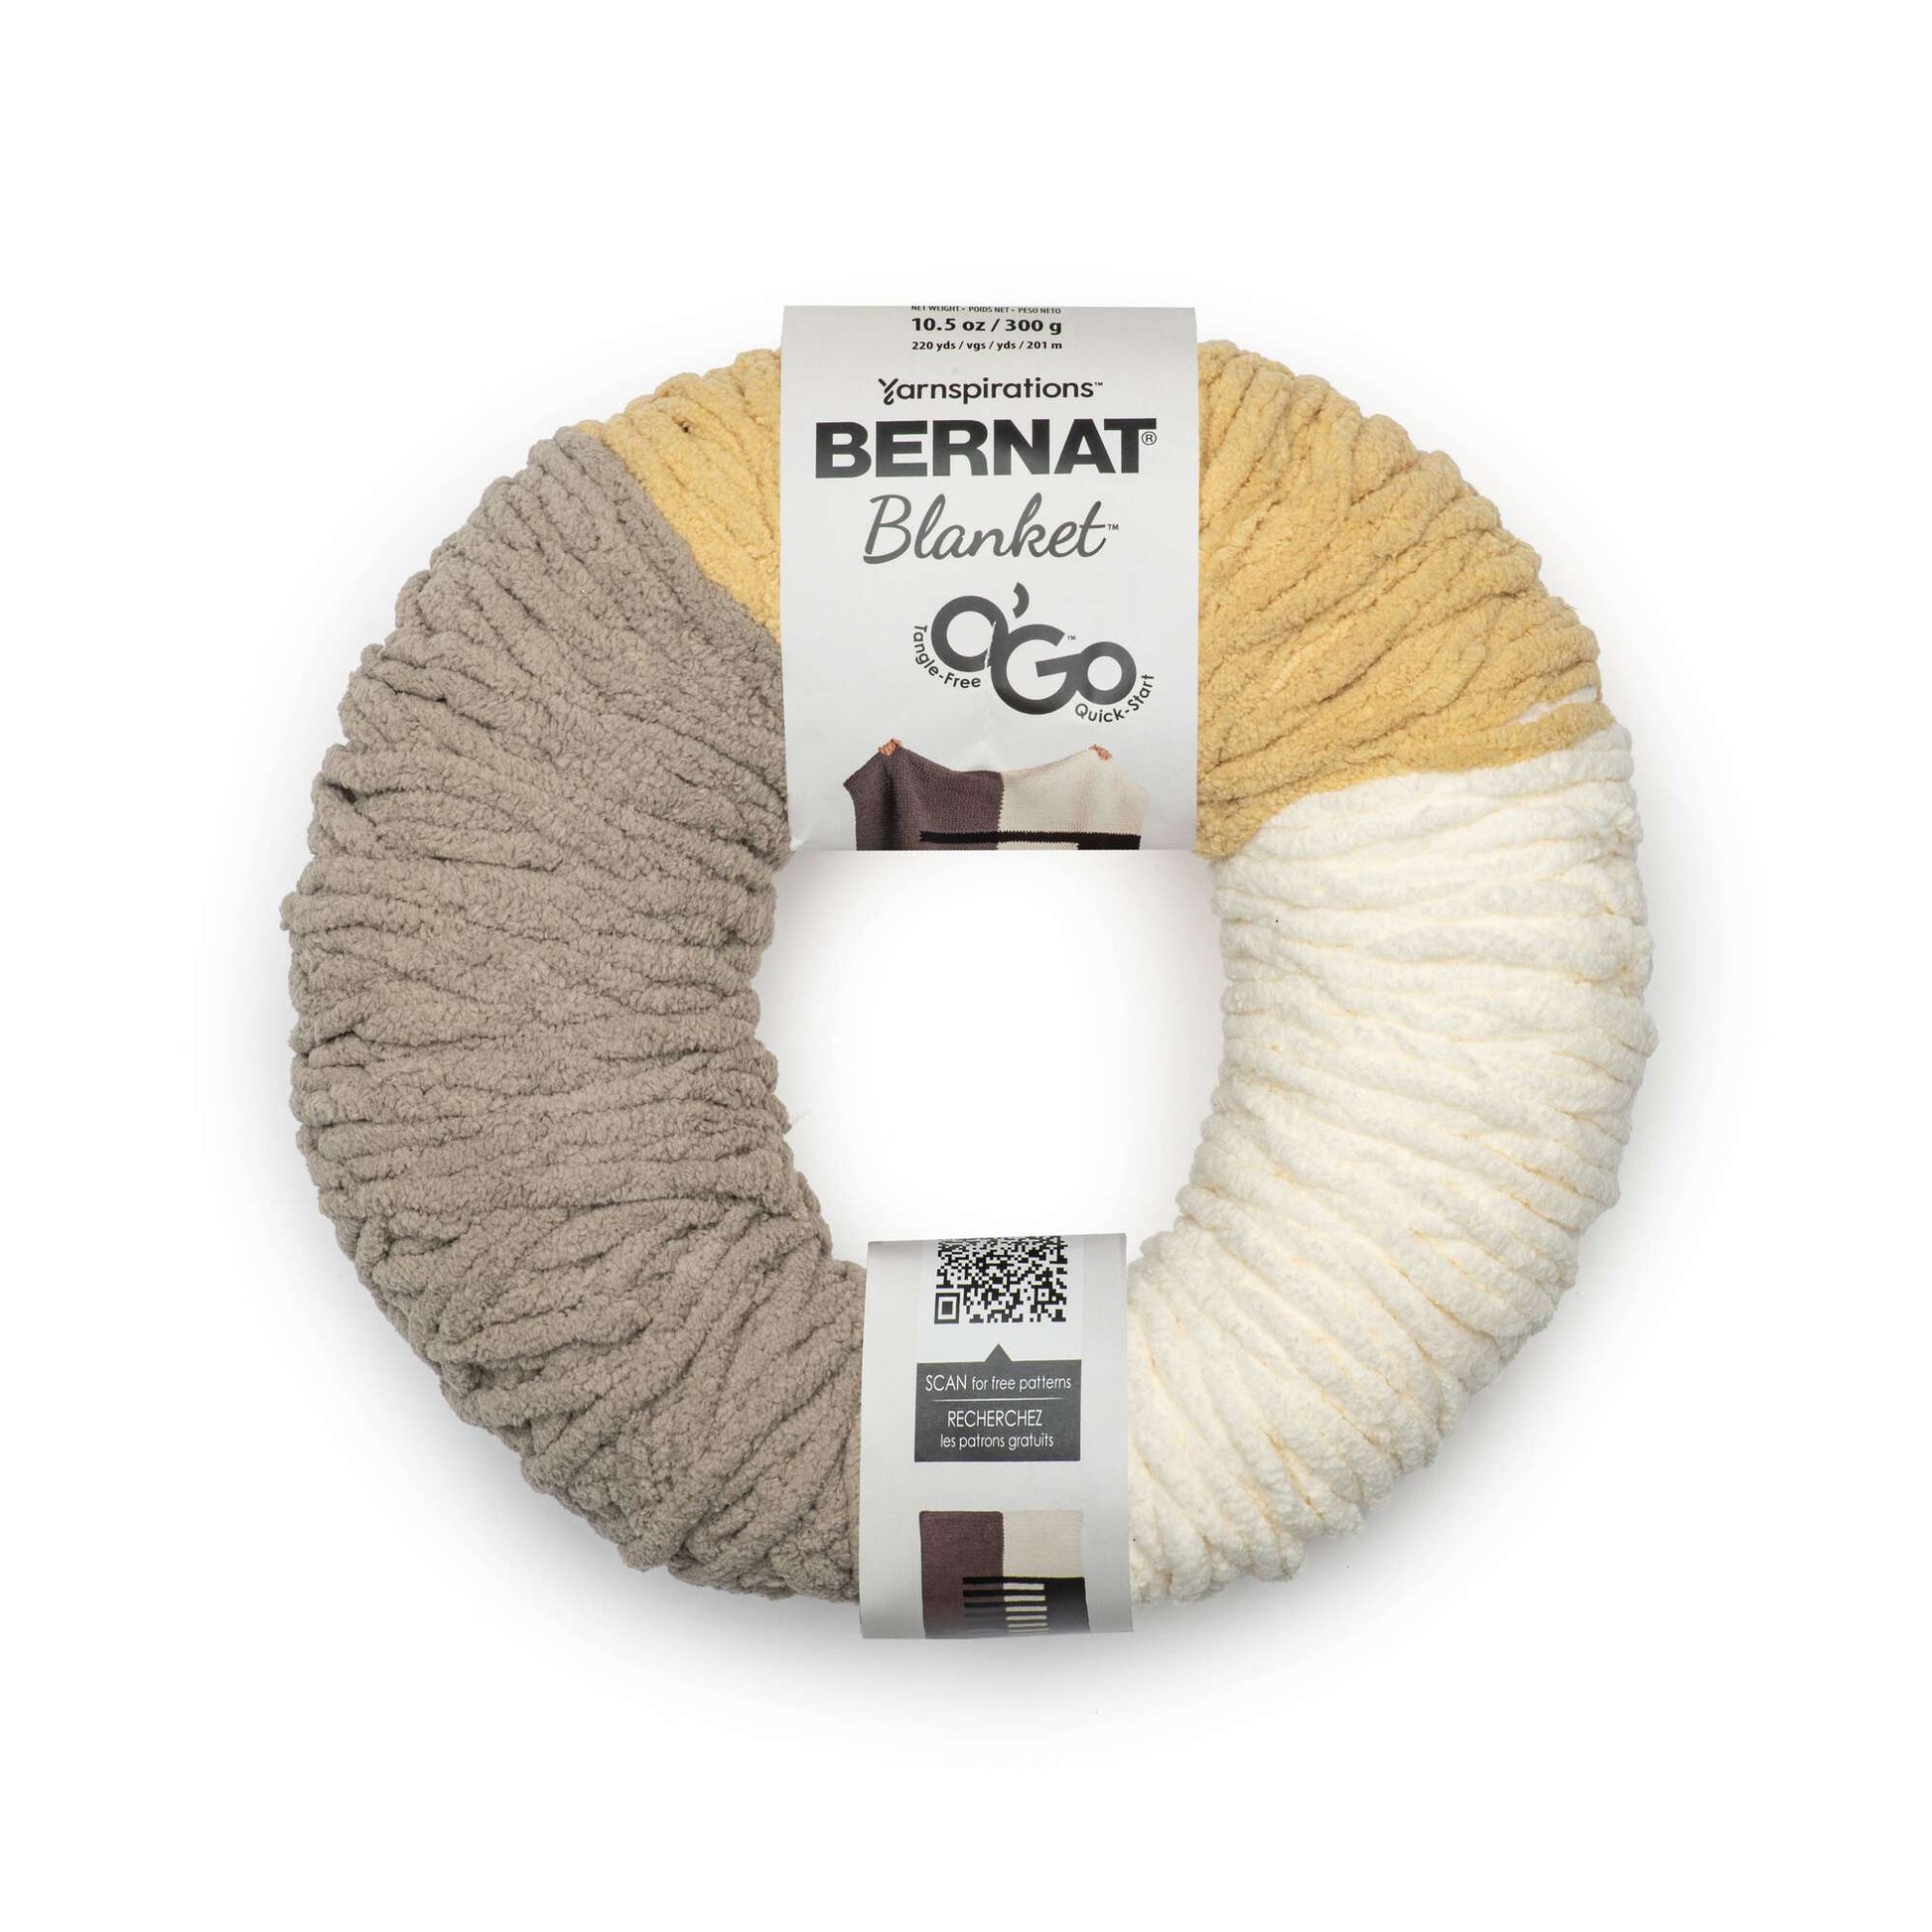 Bernat Blanket O'Go Yarn (300g/10.5oz) - Clearance Shades*